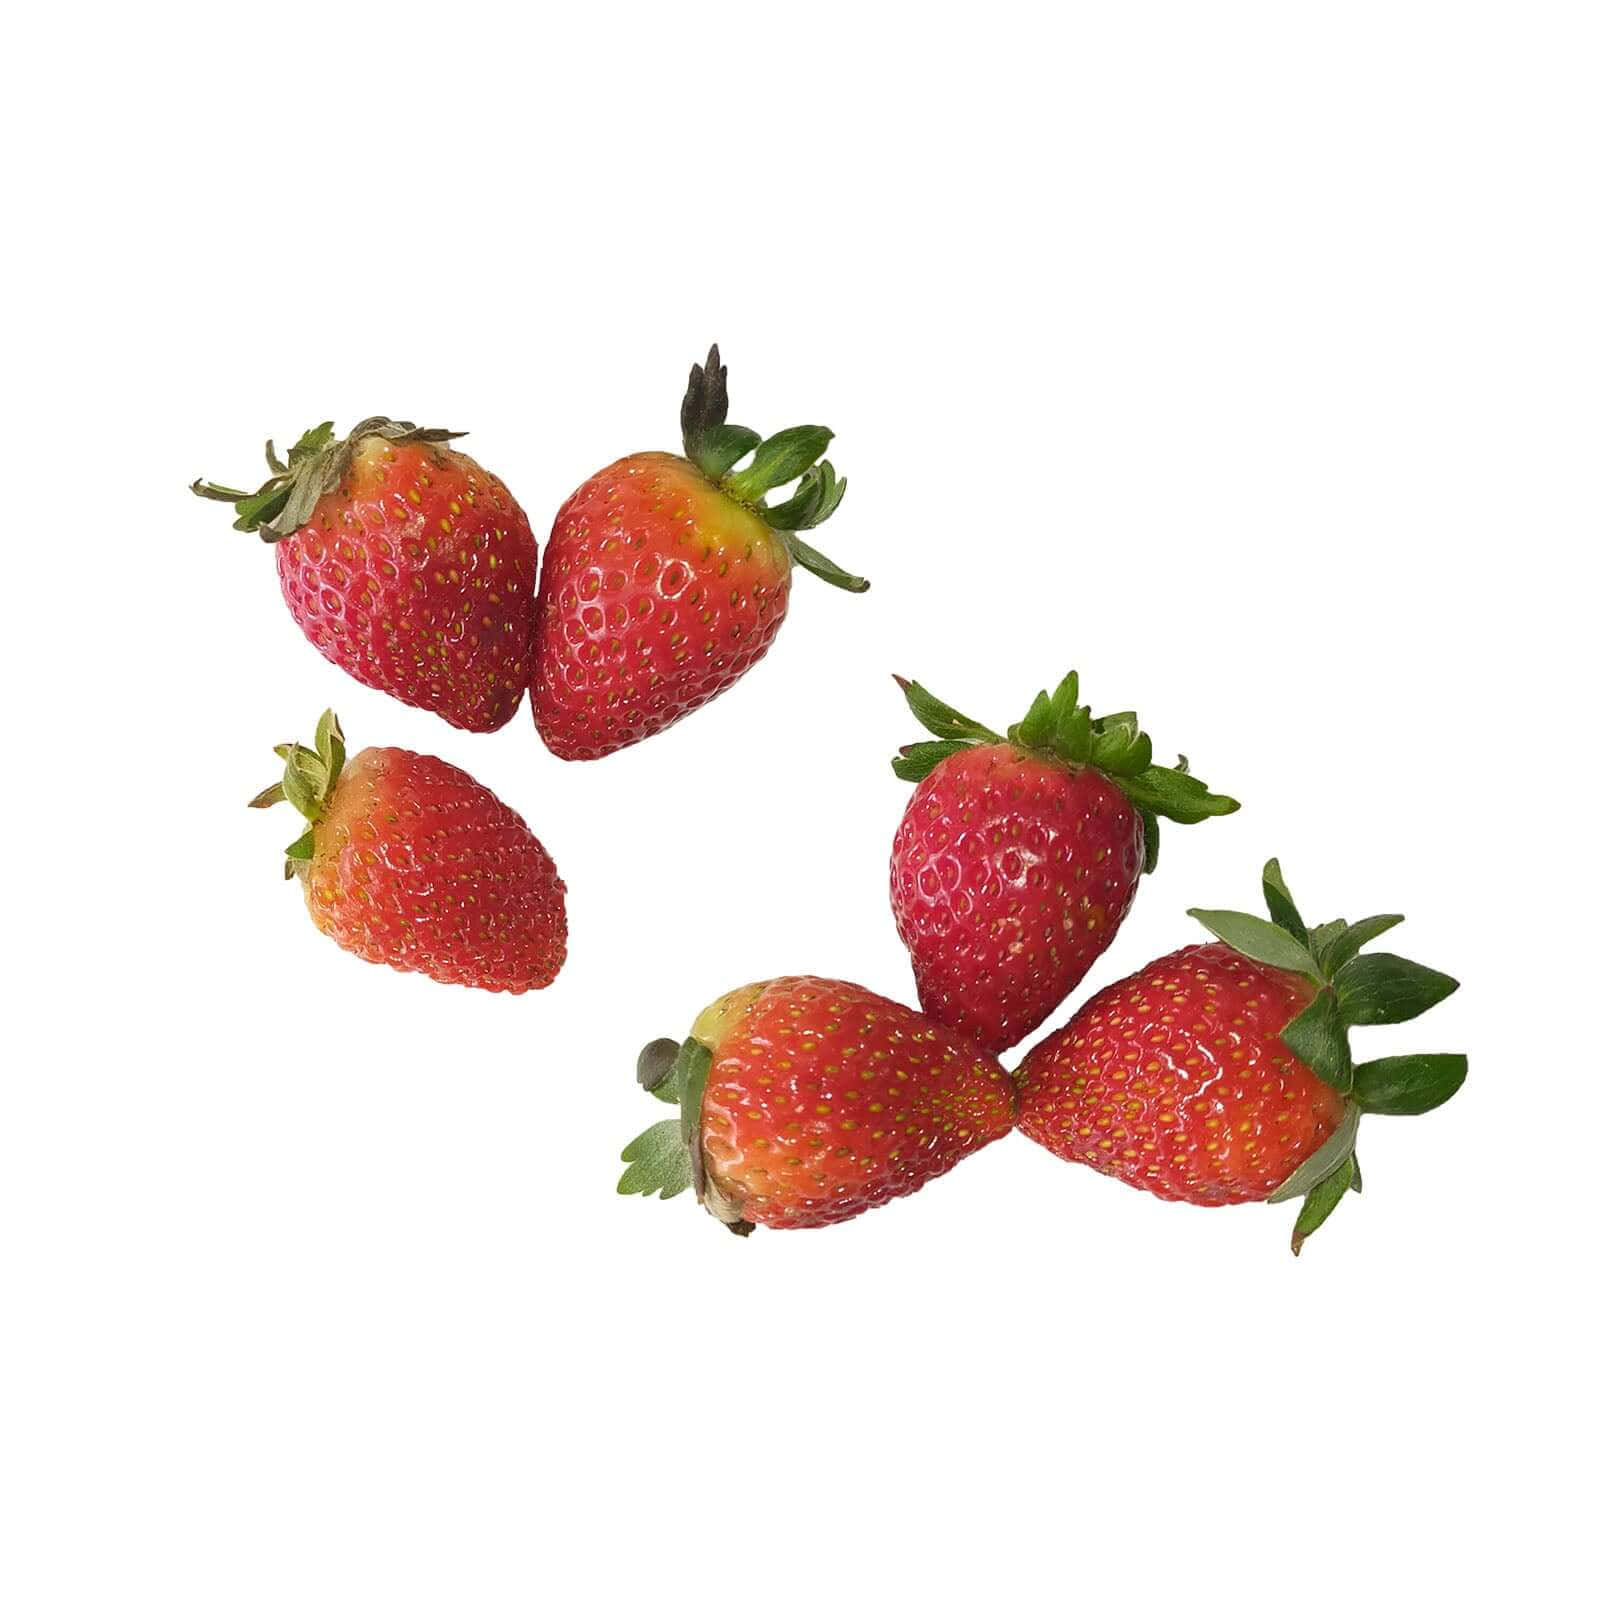 Sweet and juicy strawberries.